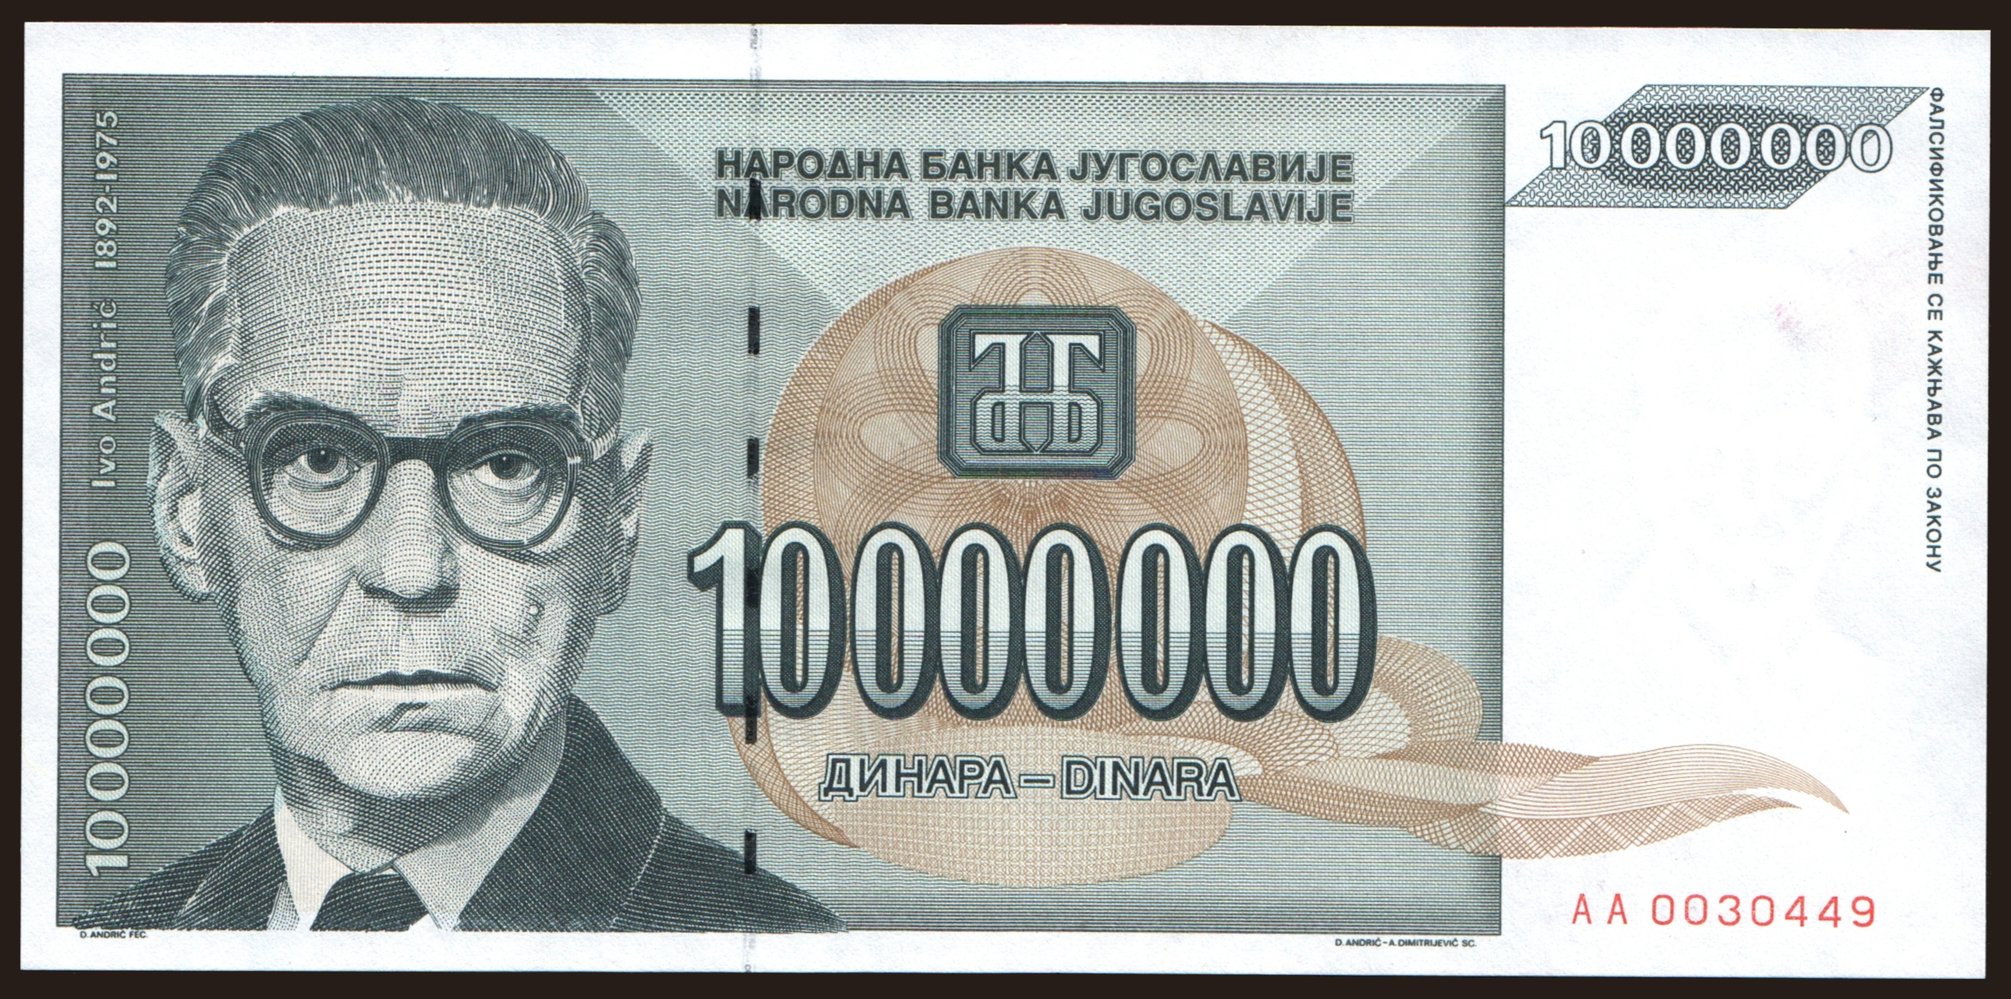 10.000.000 dinara, 1993